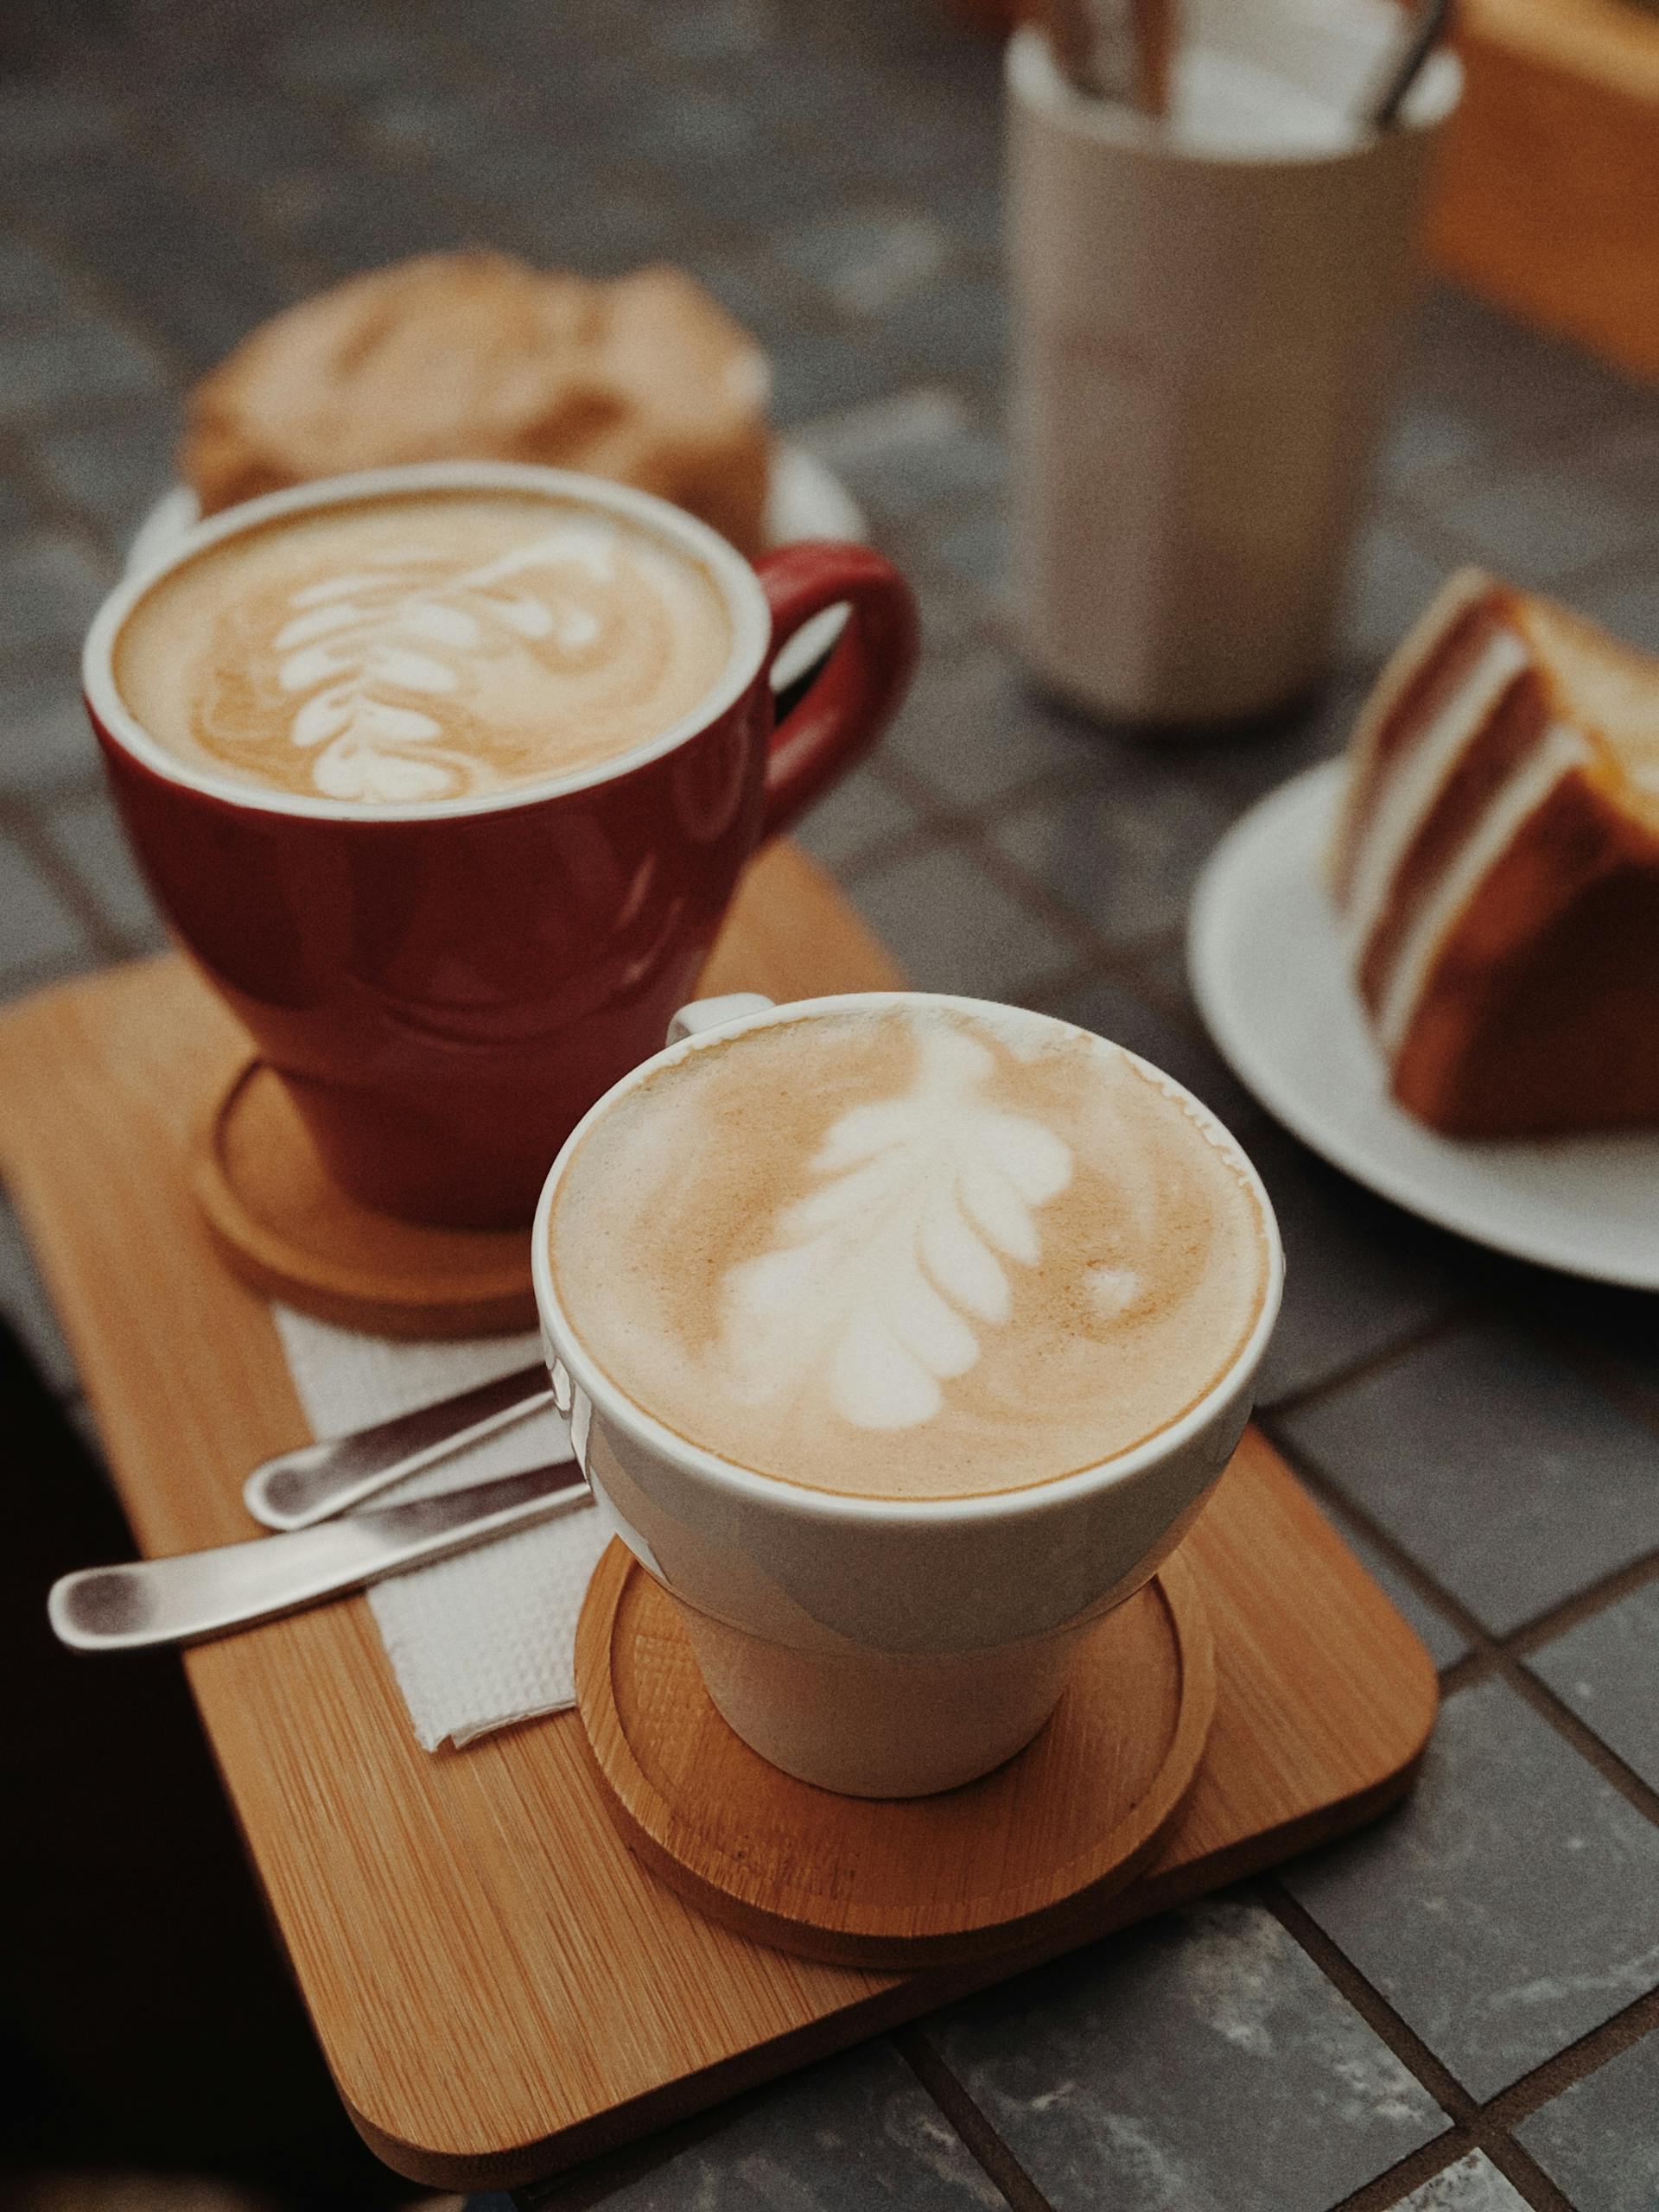 Zwei Tassen braunen Kaffees auf einem braunen Tablett | Quelle: Pexels